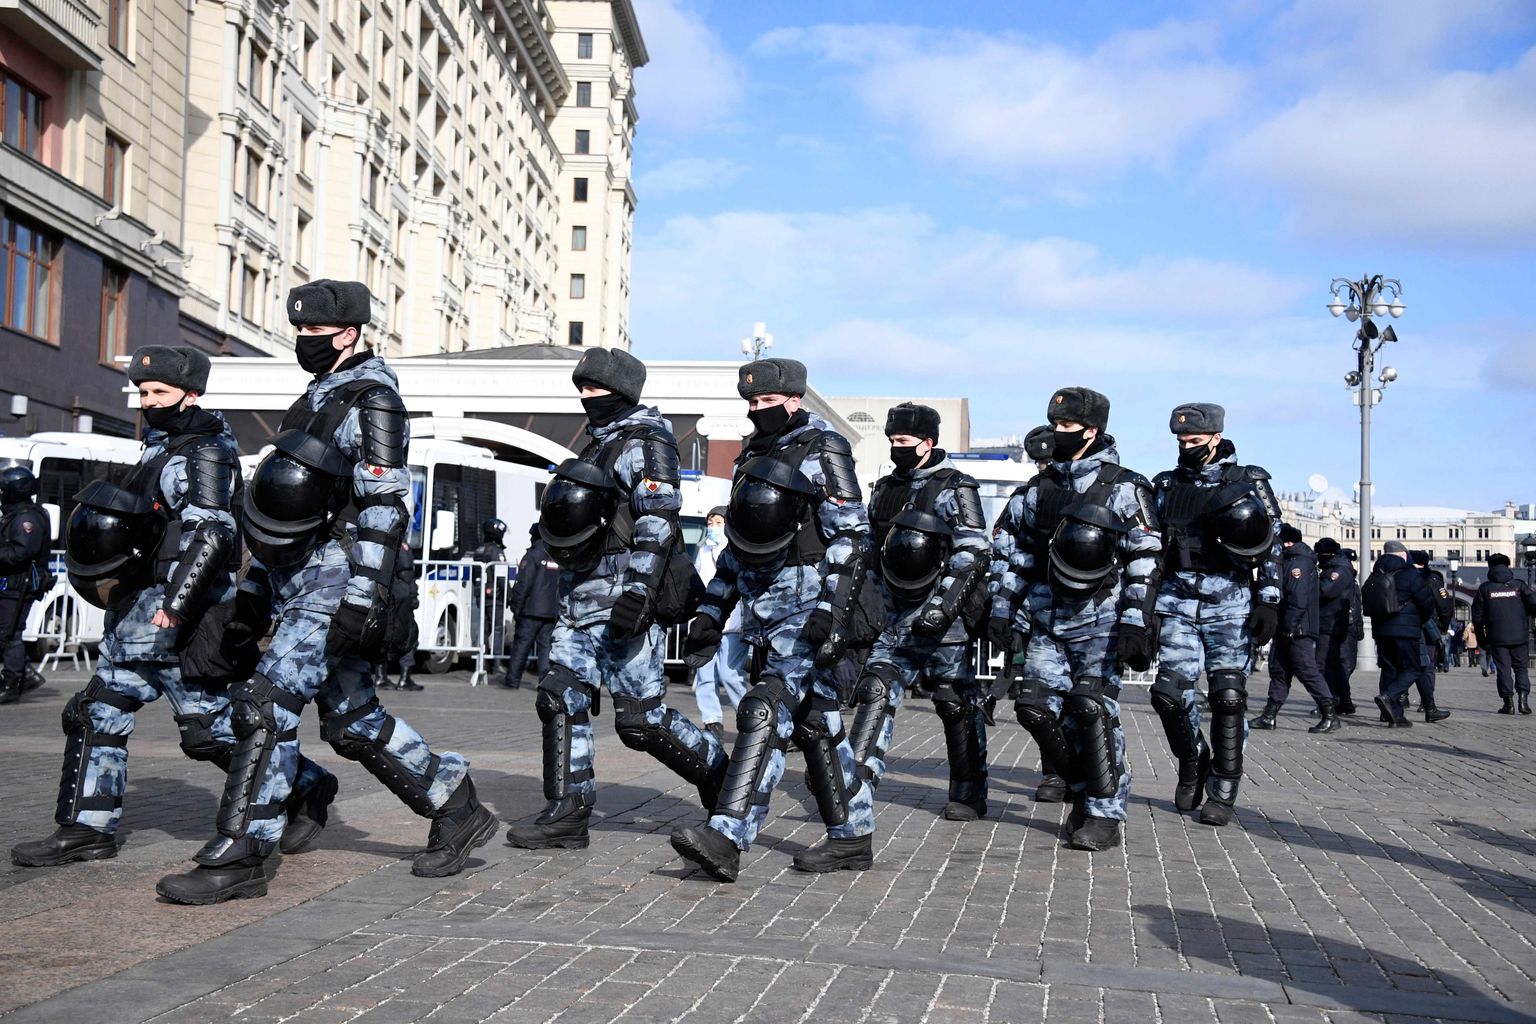 Venemaa rahvuskaardi (Rosgvardija) sõdurid 13. märtsil 2022 Moskvas, kus toimus Ukrina sõja vastane meeleavaldus